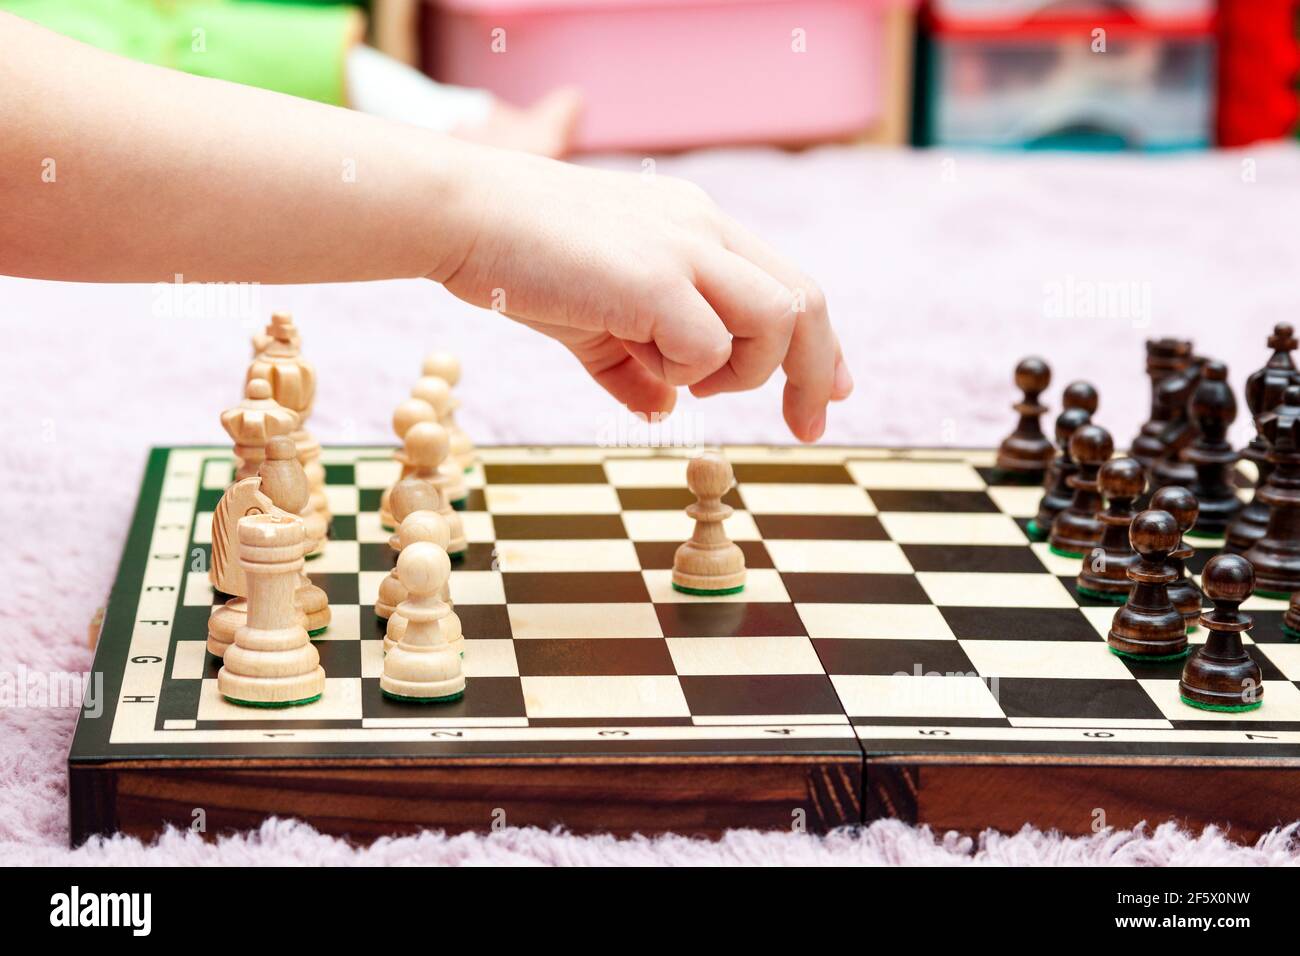 Jeune petite fille, enfant jouant aux échecs, chessboard vue latérale, main déplaçant une pièce d'échecs, sur le point de l'attraper, gros plan. Faire un mouvement, stratégie, planification, Banque D'Images